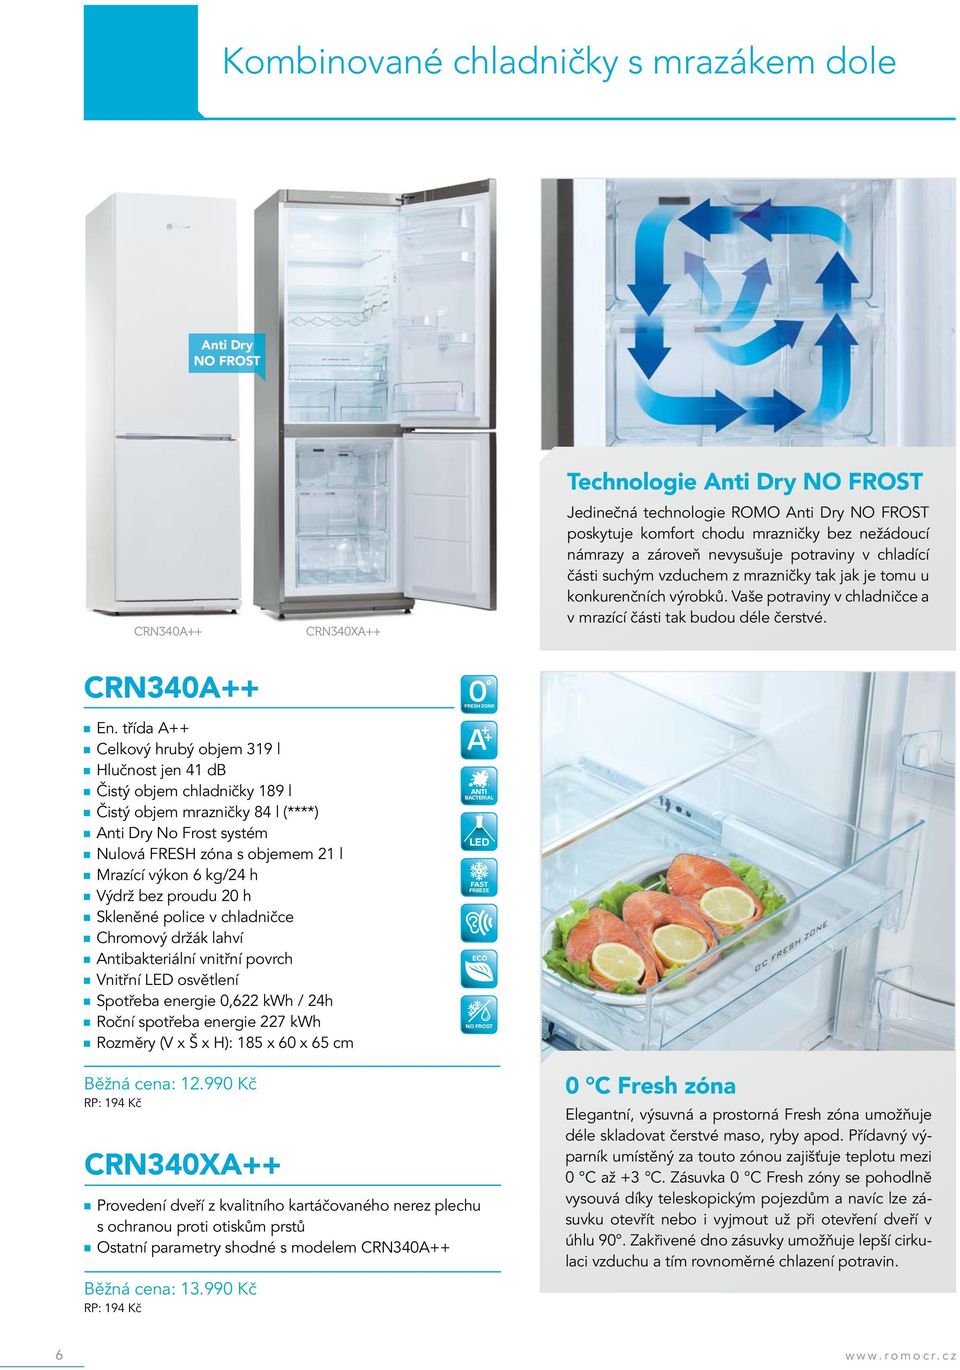 Vaše potraviny v chladničce a v mrazící části tak budou déle čerstvé.